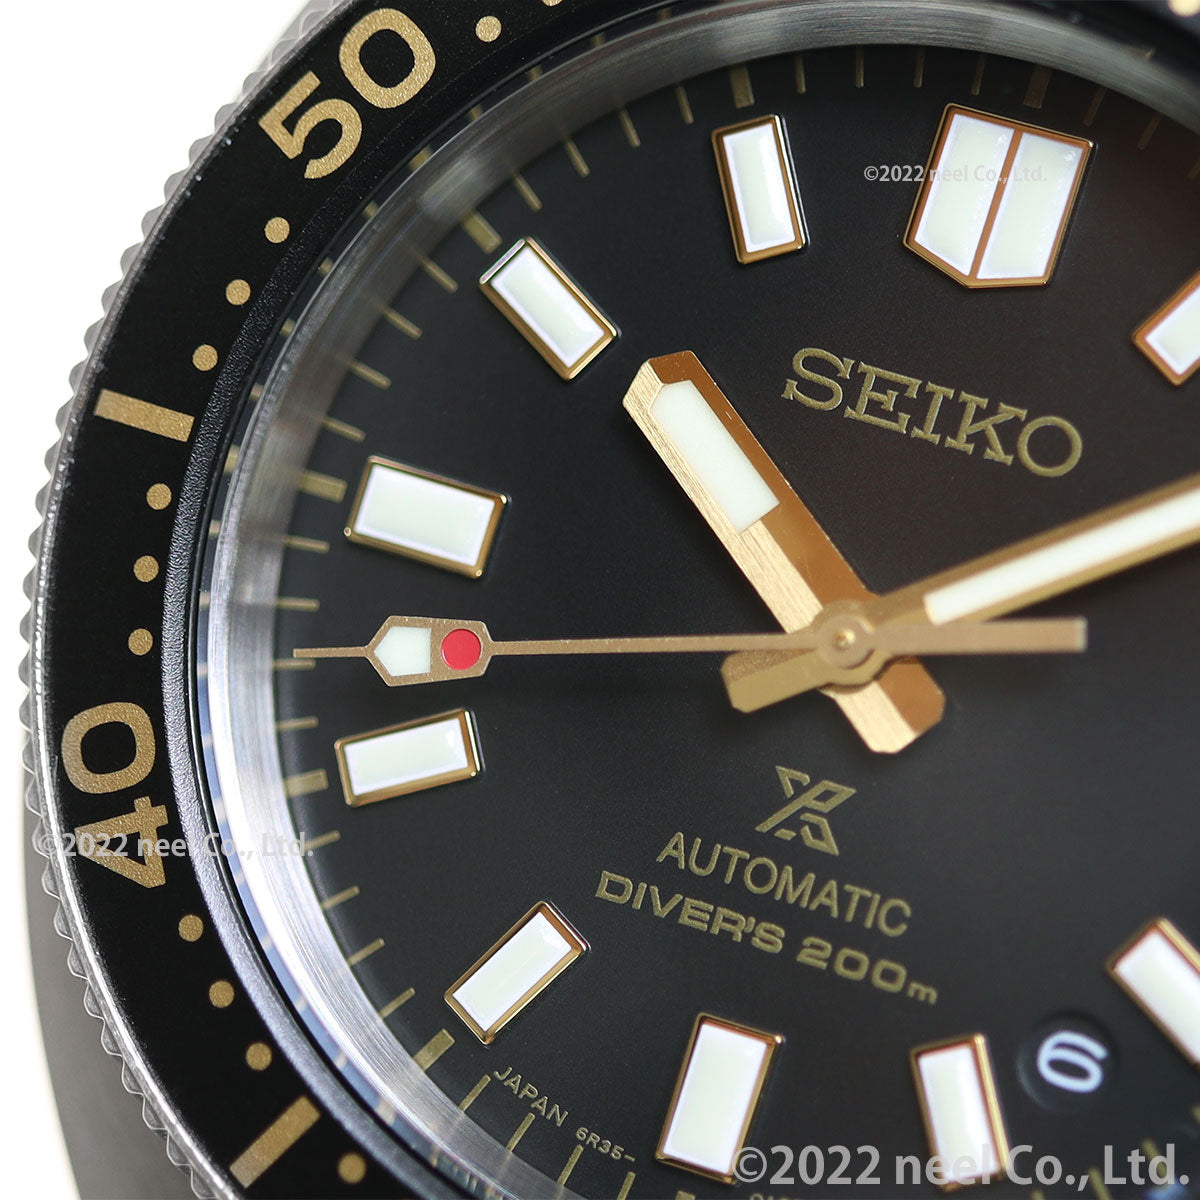 セイコー プロスペックス SEIKO PROSPEX 1stダイバーズ メカニカル 自動巻き コアショップ専用モデル 腕時計 メンズ SBDC173